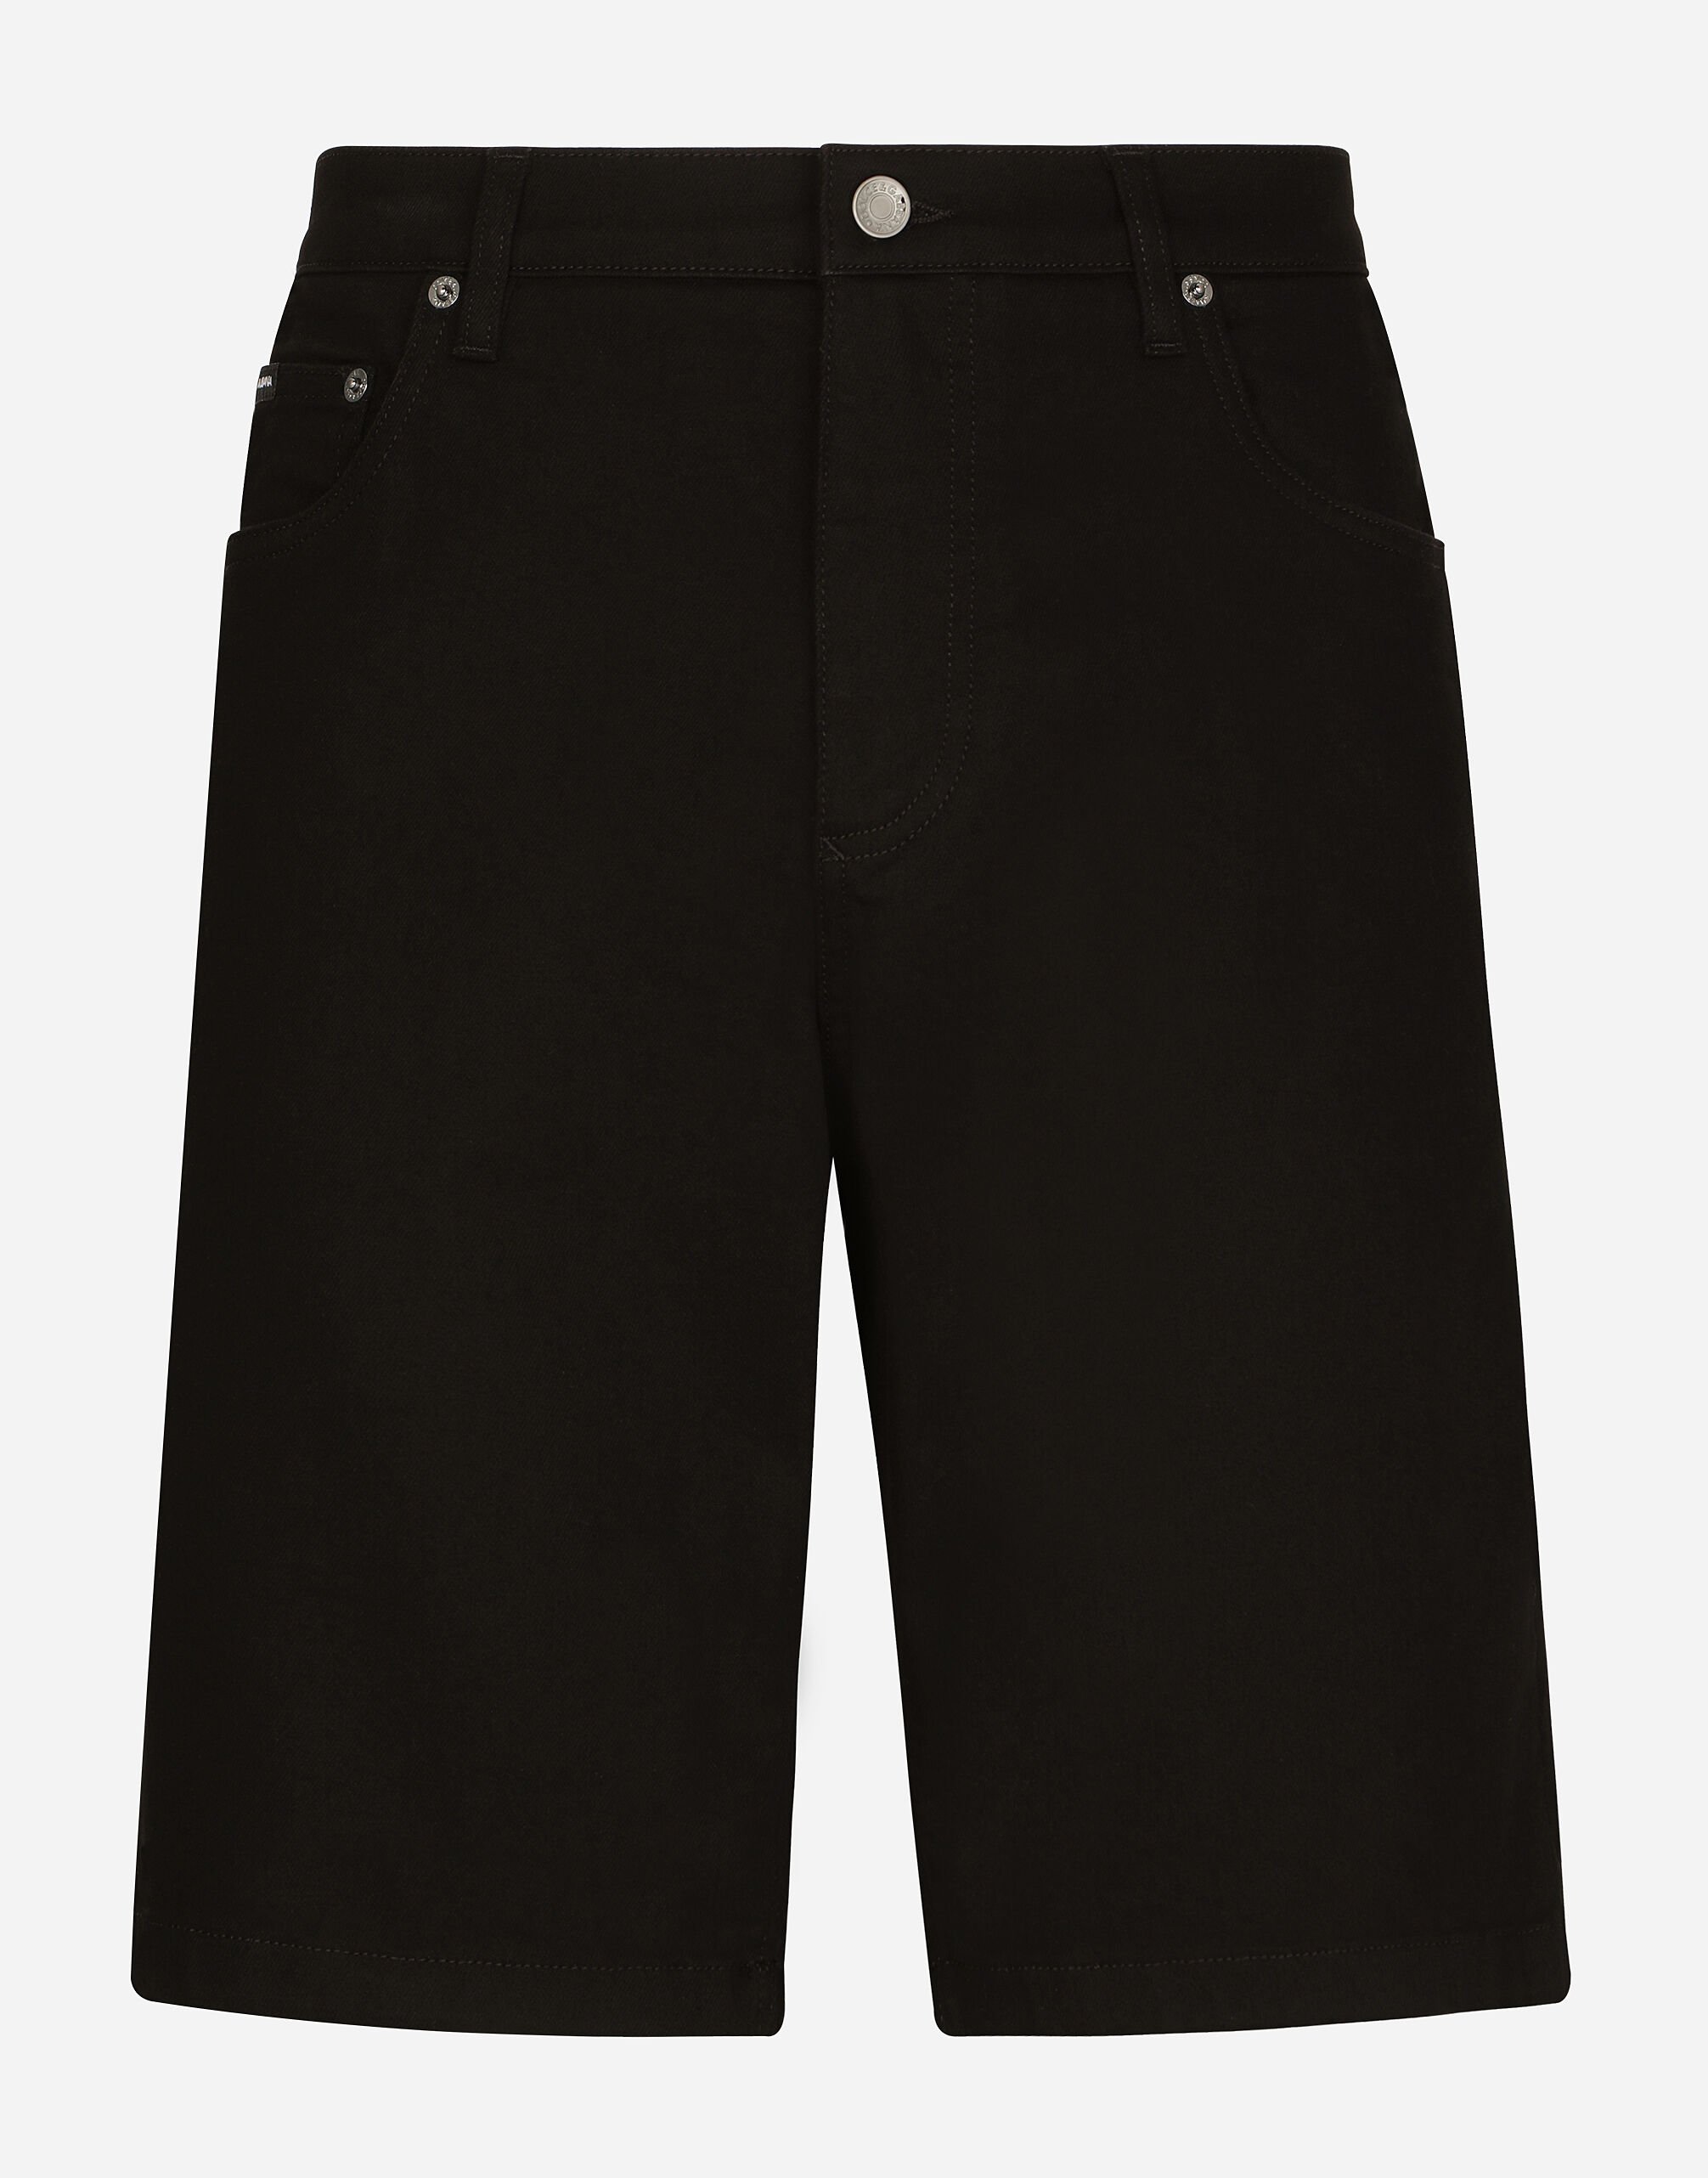 Dolce & Gabbana 黑色洗水弹力牛仔百慕大短裤 黑 G5JG4TFU5U8